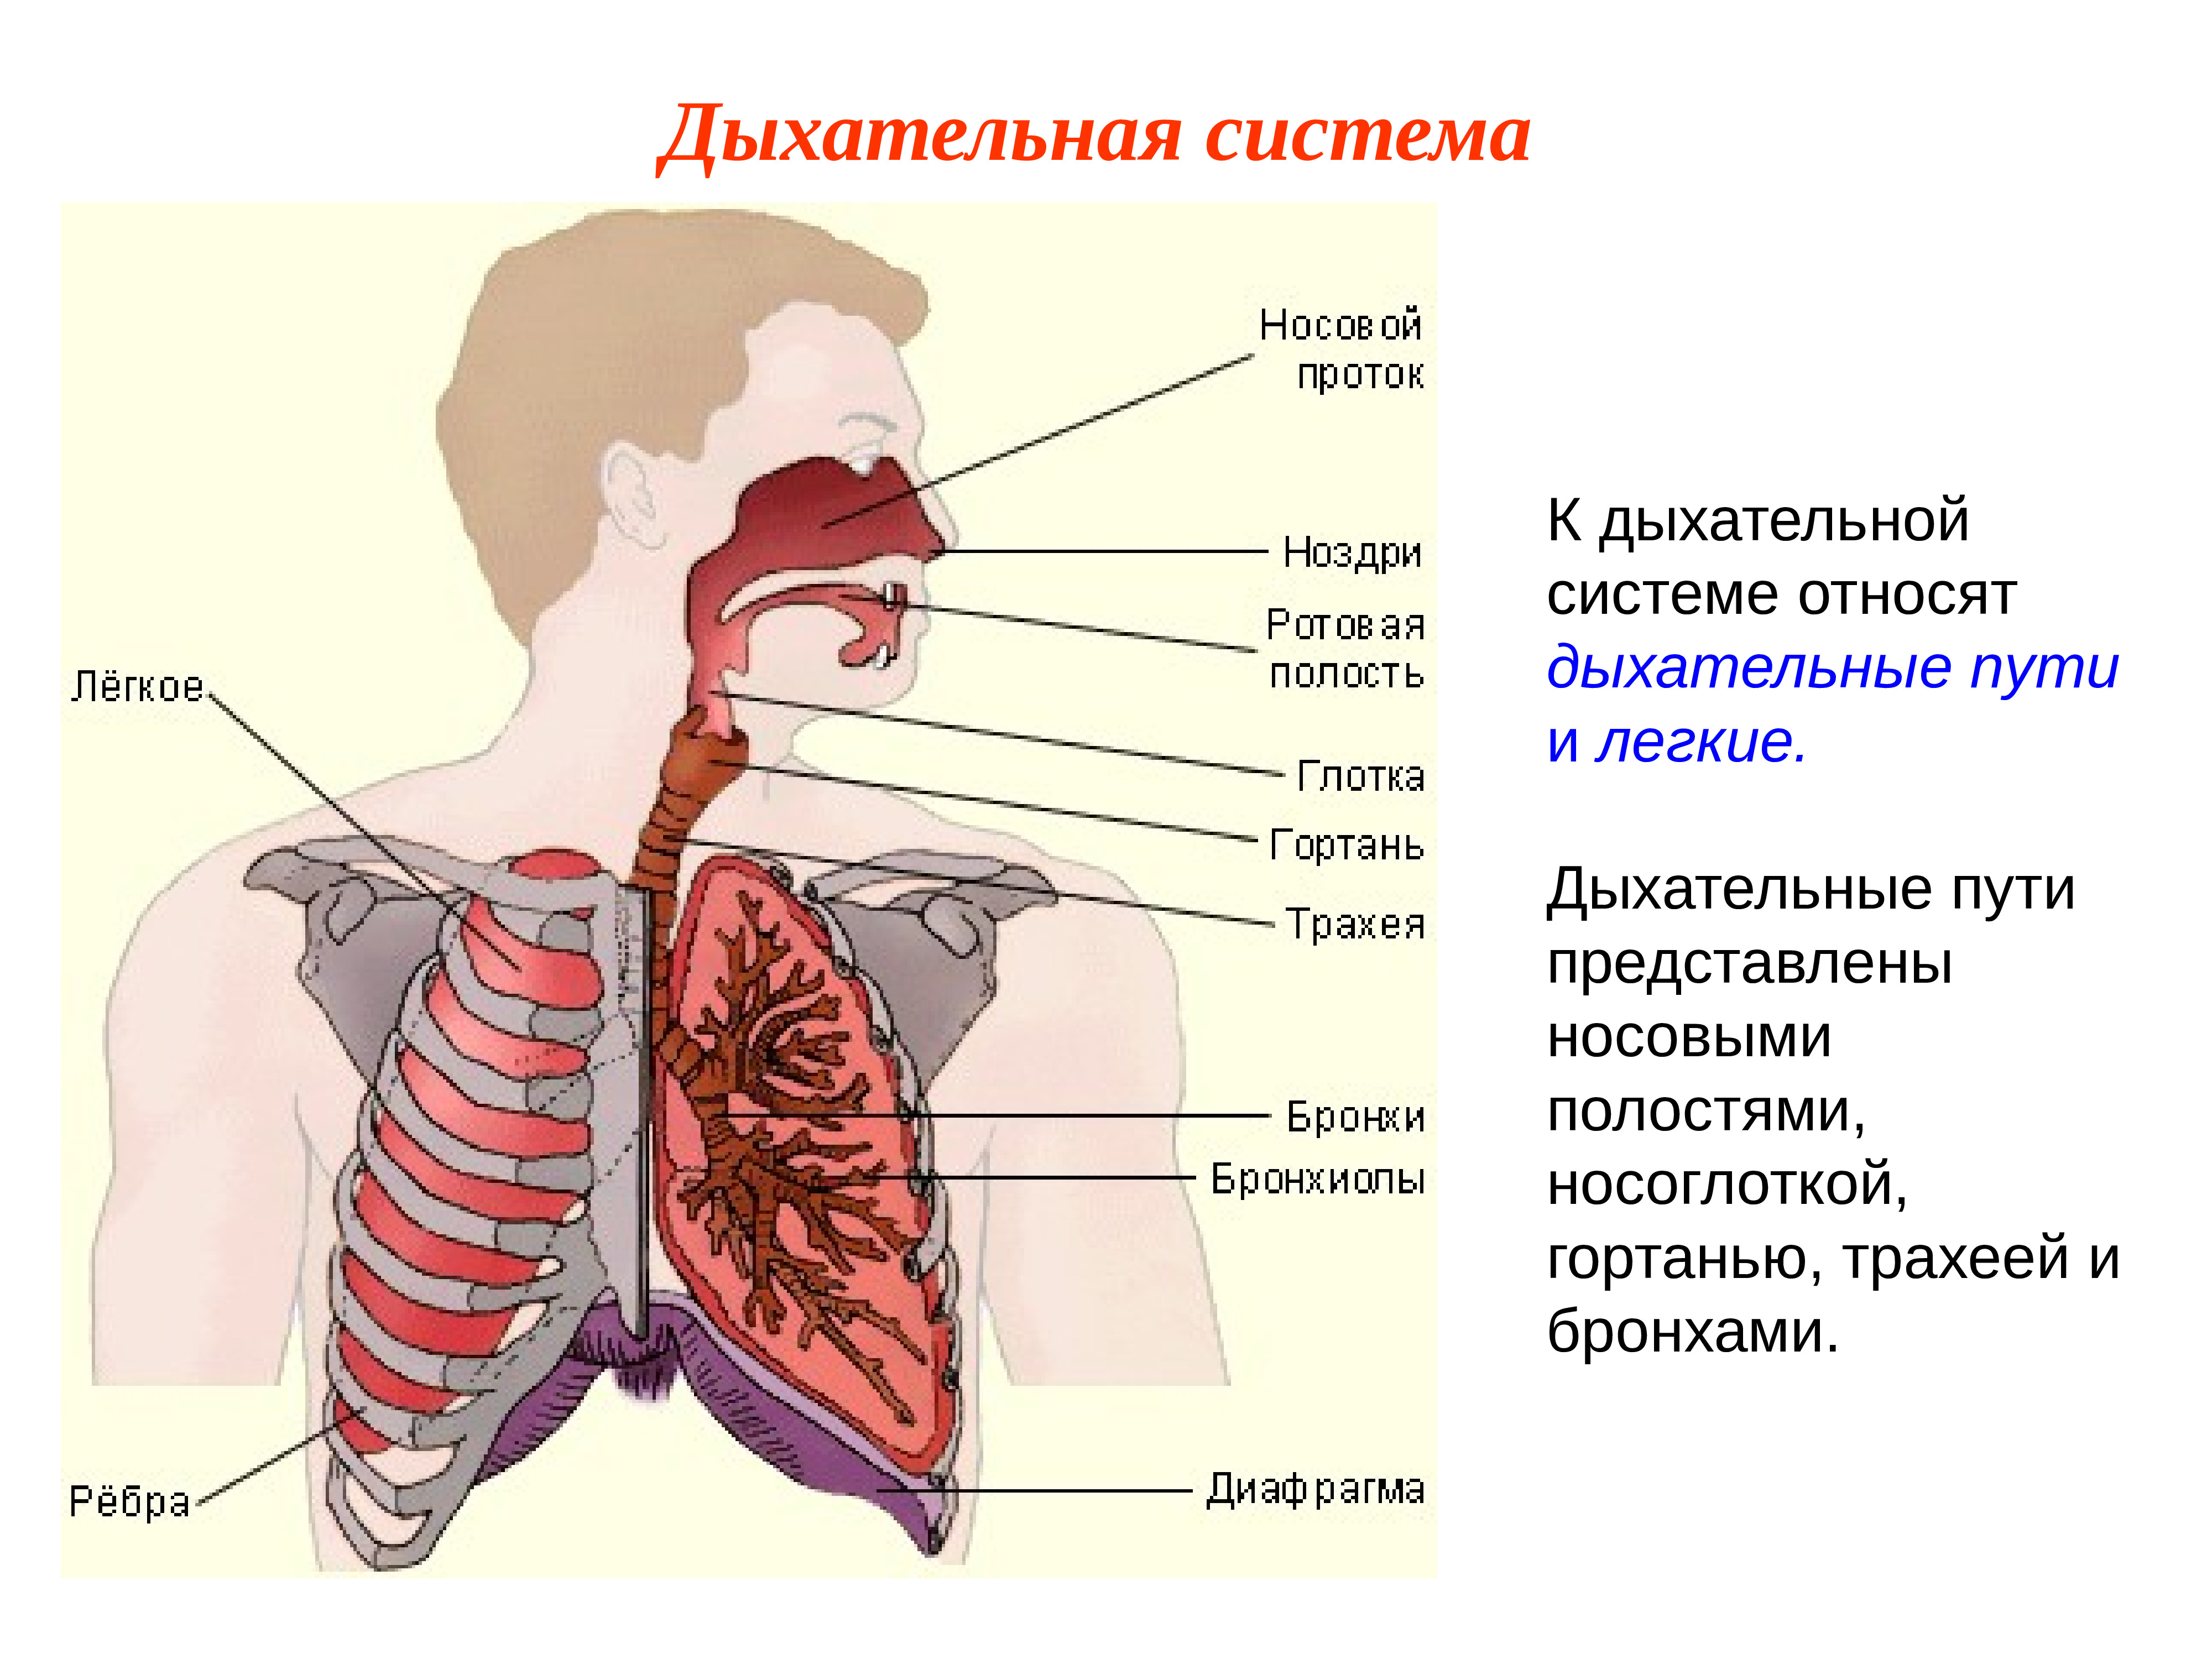 Носоглотка бронхи гортань носовая полость легкие трахея. Строение дыхательной системы человека. Строение системы органов дыхания анатомия. Дыхательная система трахея анатомия. Схема дыхательных путей.